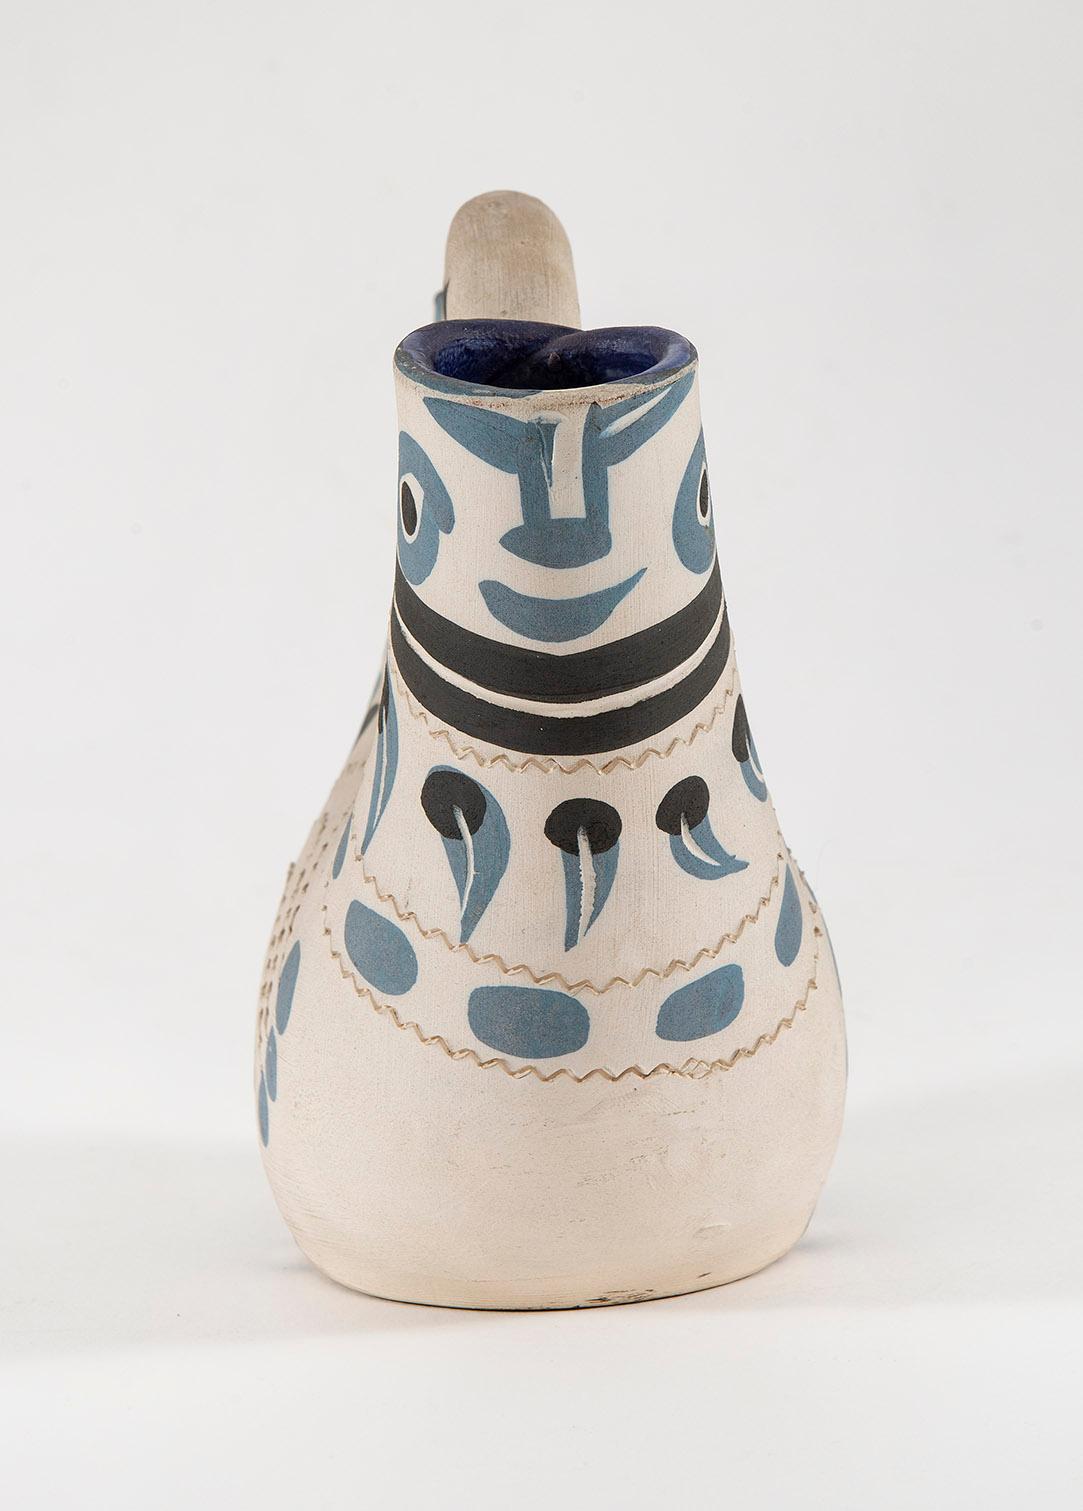 Pichet Espagnol, Picasso, 1950er Jahre, Krug, Keramik, Steingut, Mehrere – Sculpture von Pablo Picasso